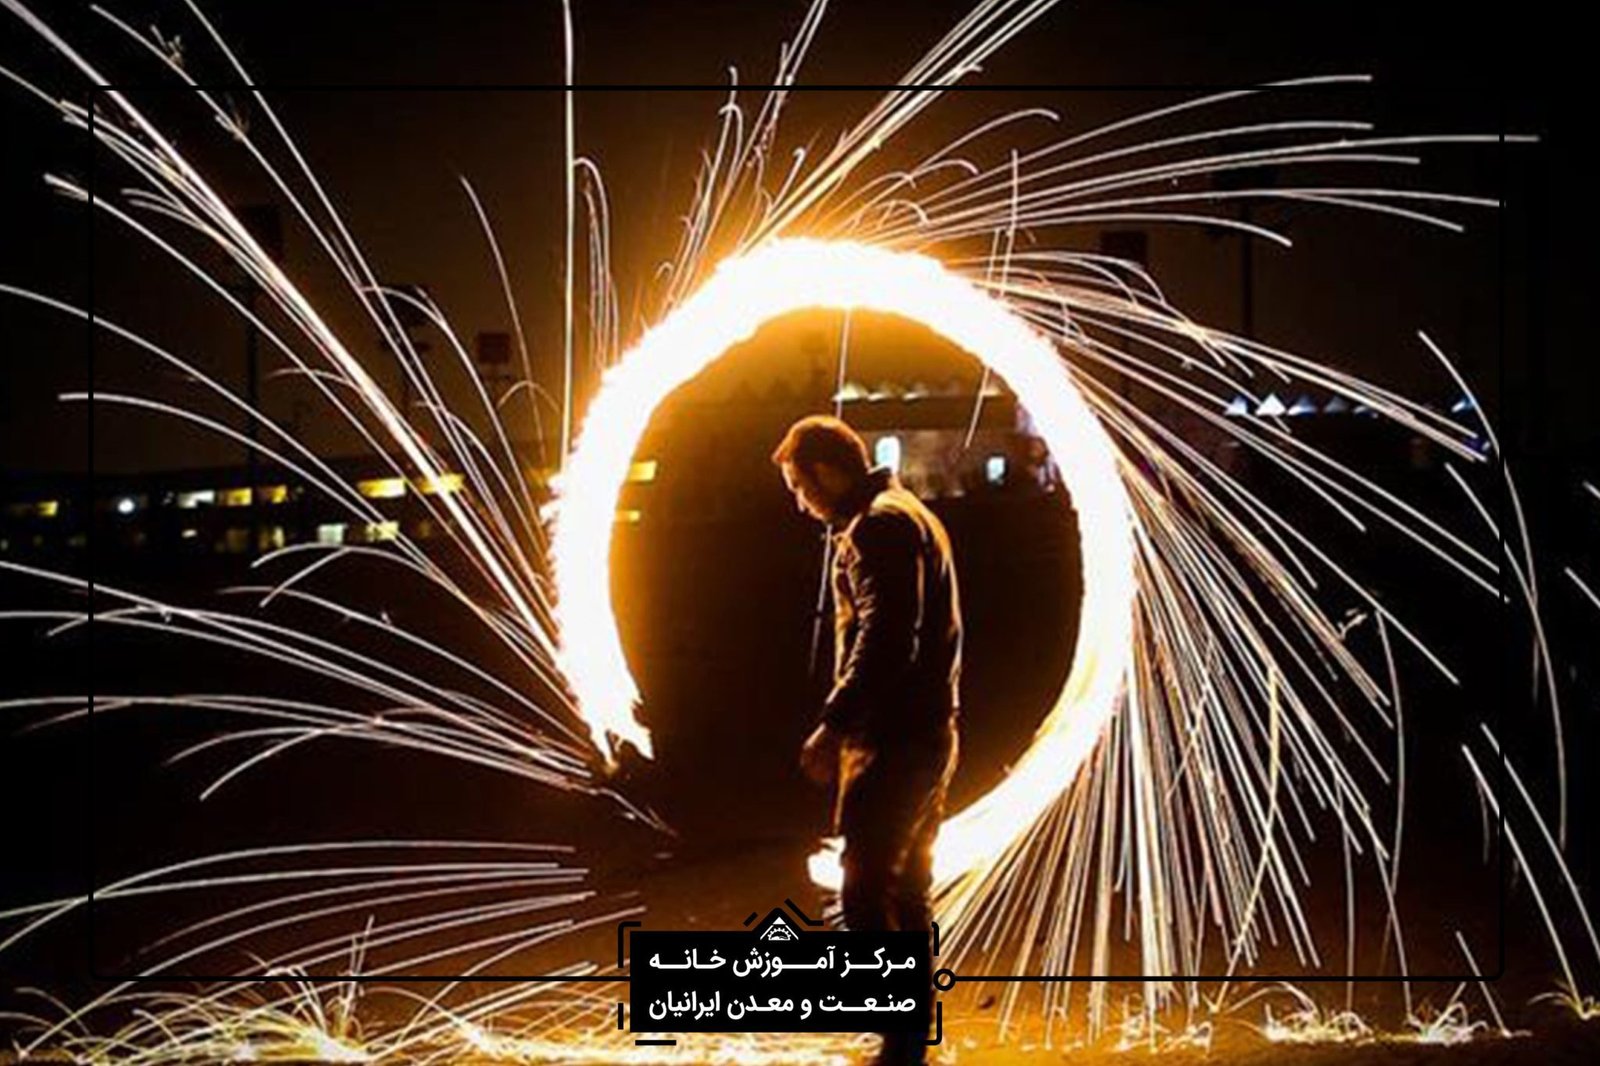 عکاسی در شیراز - آموزش عکاسی حرفه ای در شیراز